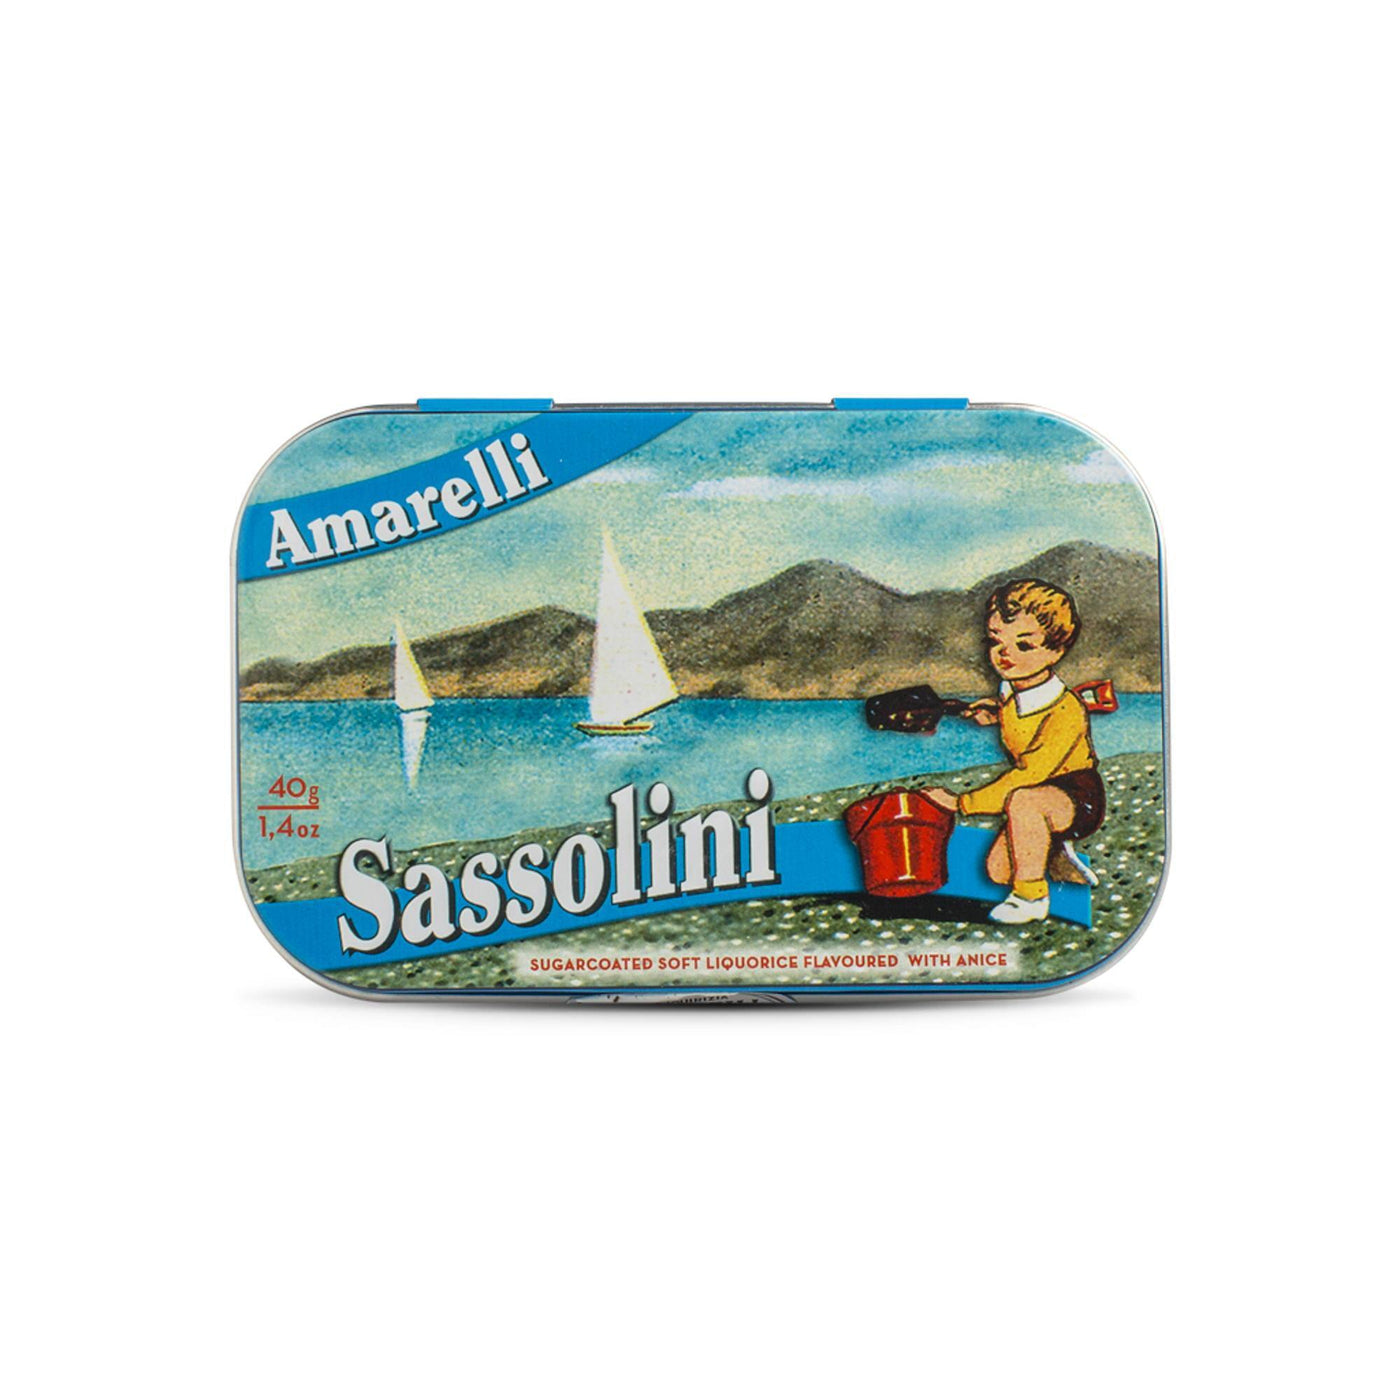 Amarelli Sassolini 40g Tin - Vanilla & Anise Flavoured Sugar Coated Liquorice-Italian Liquorice-Liquorice Heaven